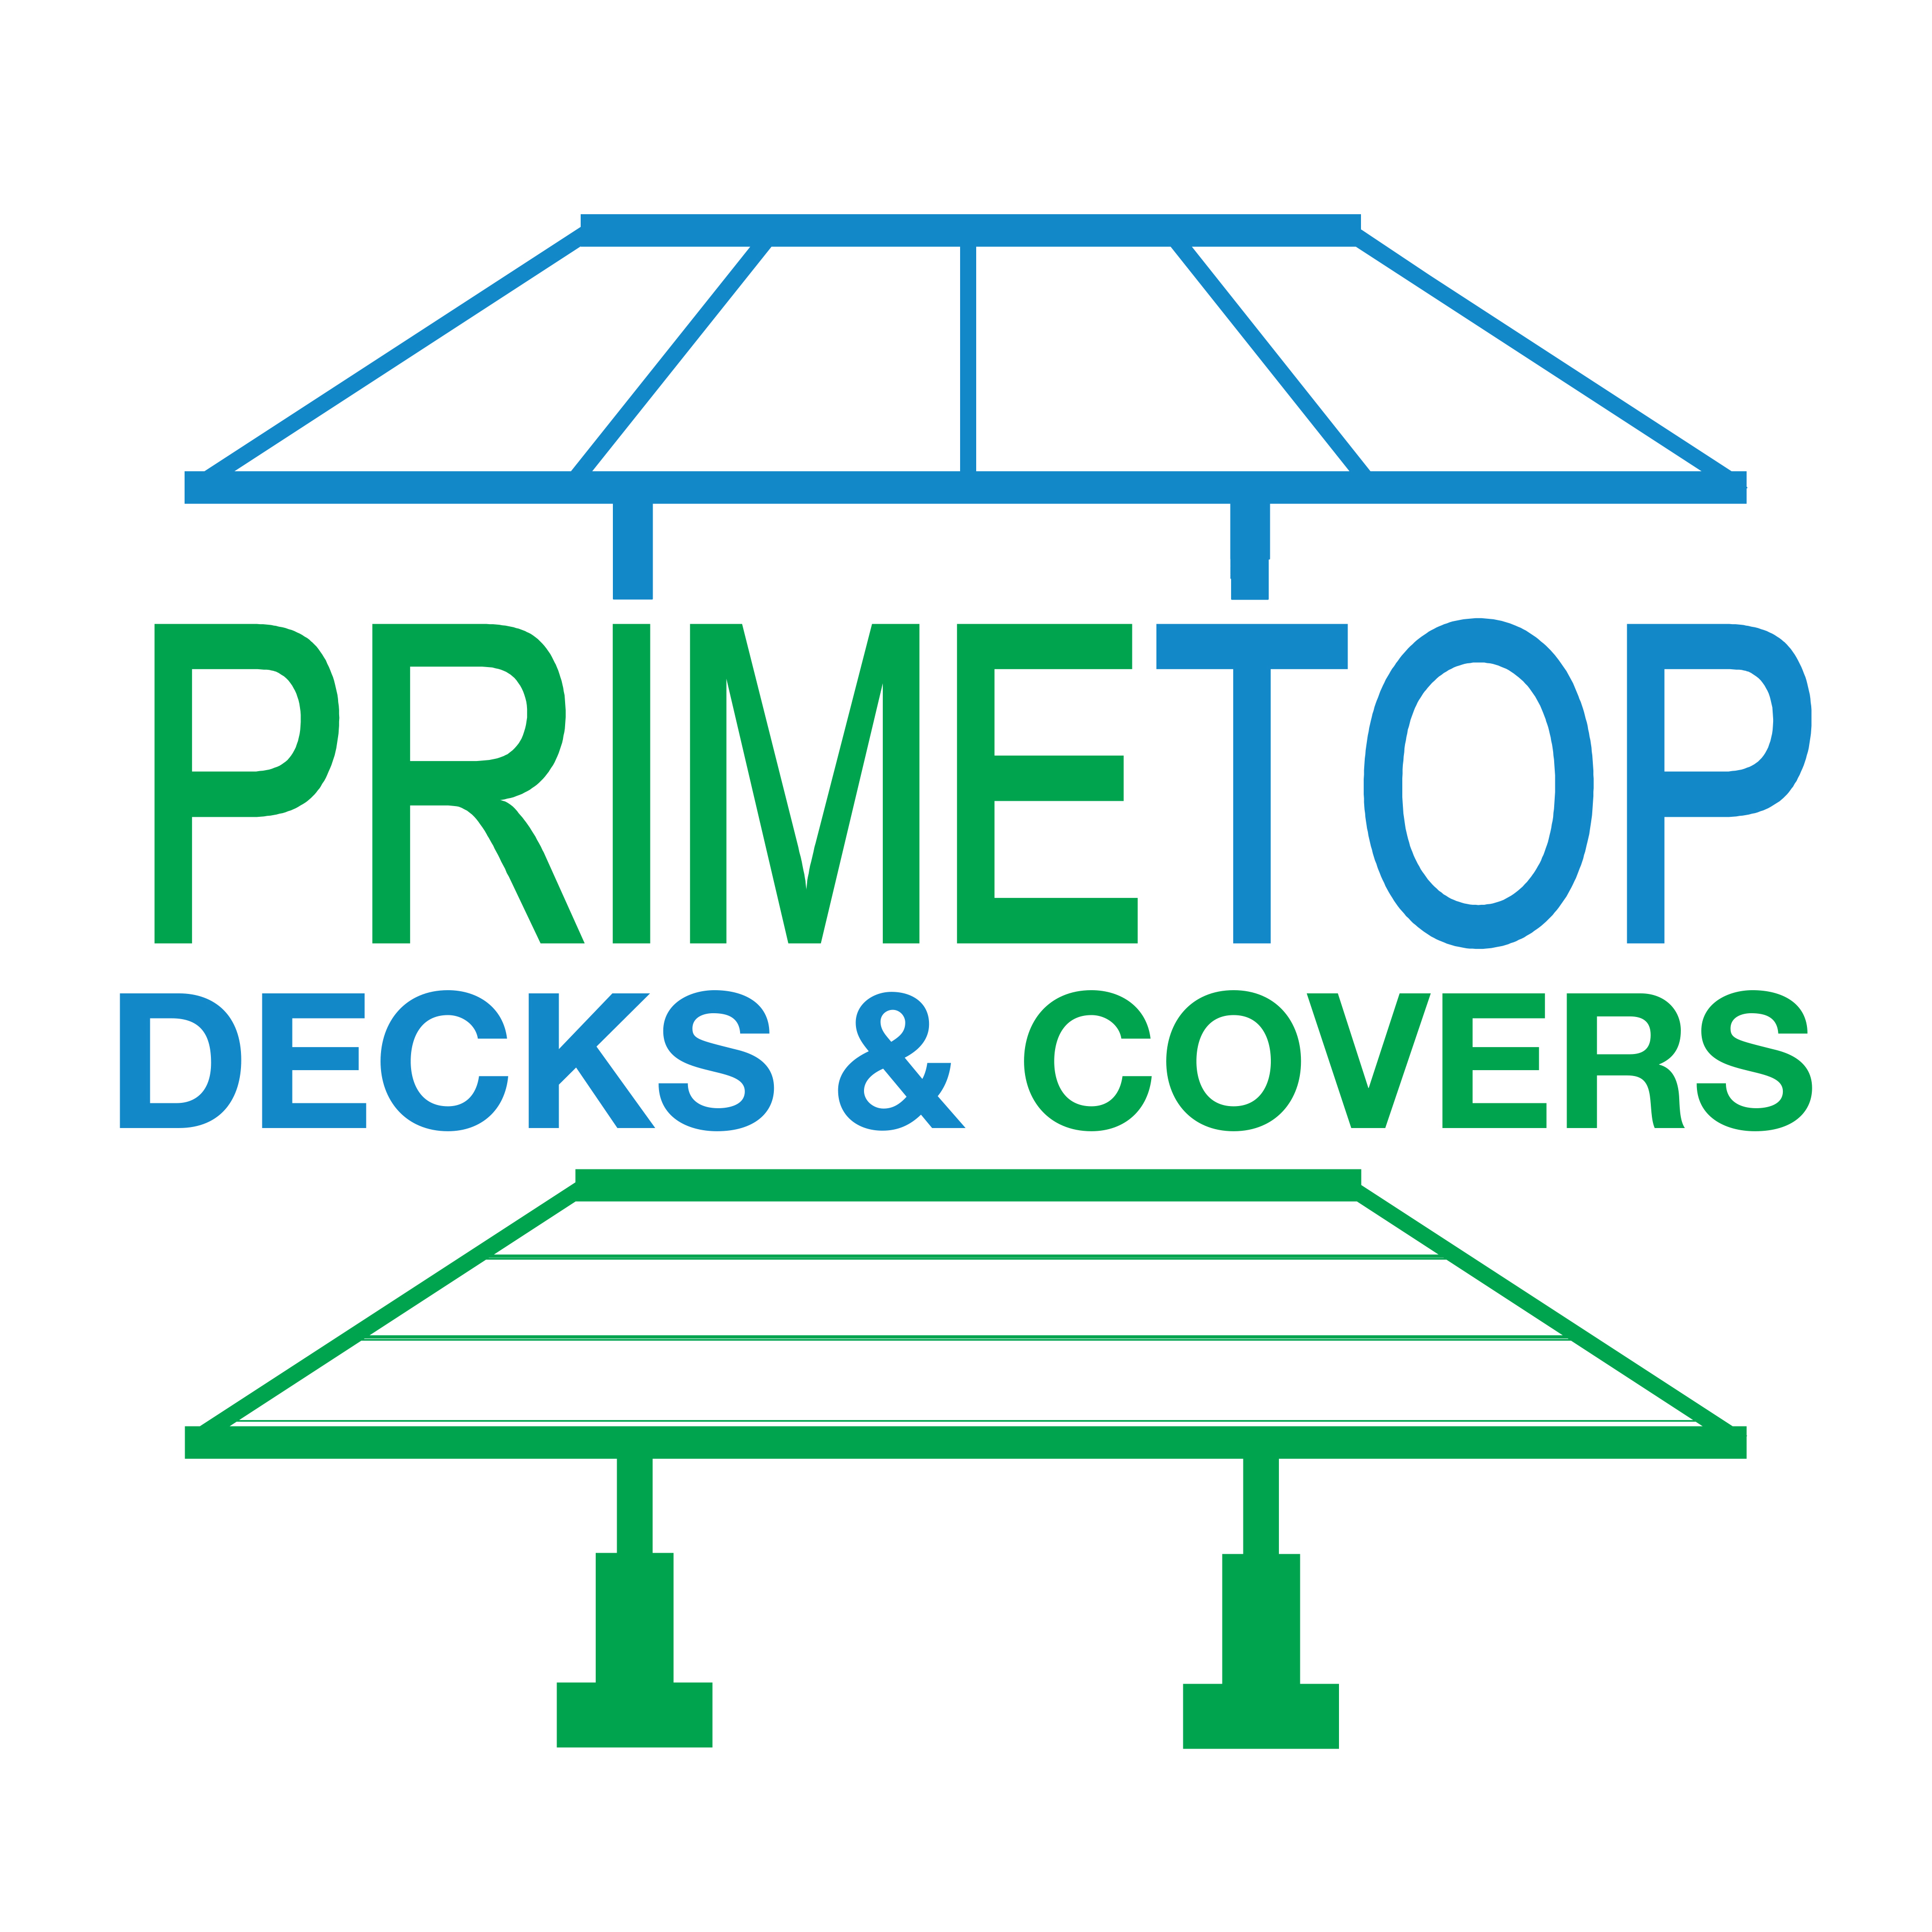 Primetop Decks & Covers